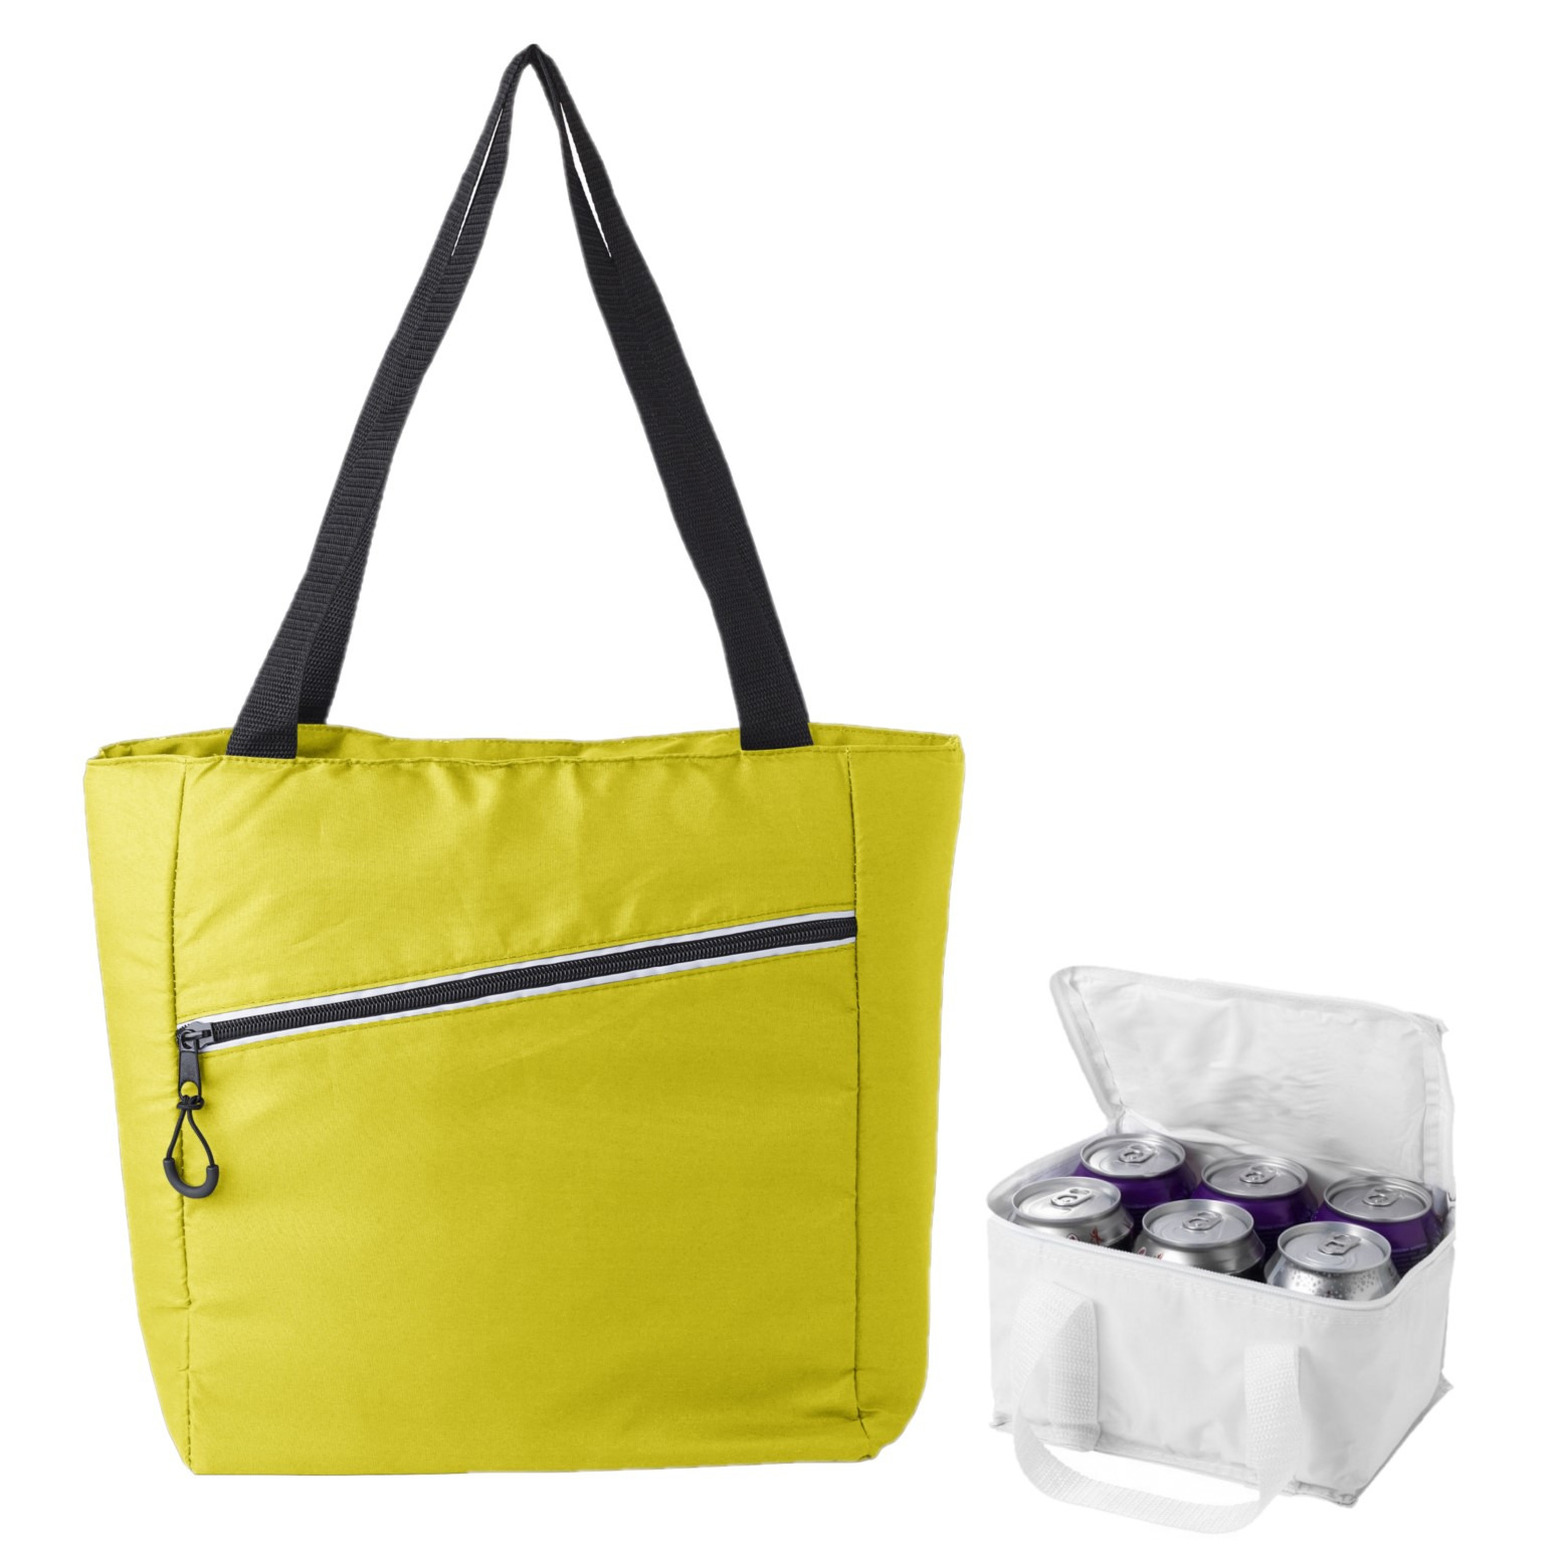 Koeltassen set draagtas-schoudertas geel-wit 20 en 4 liter